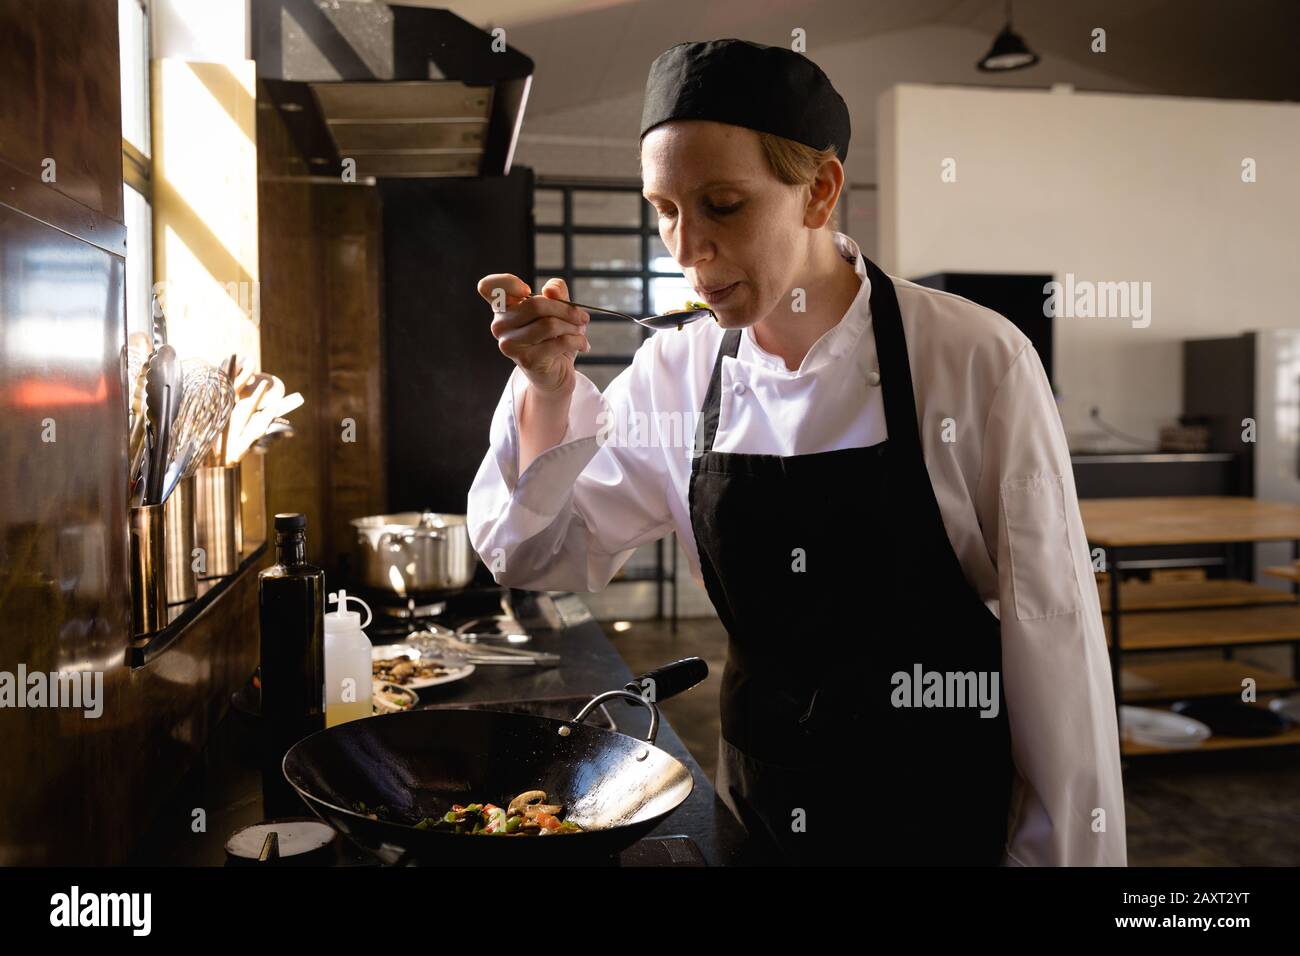 Vue de face d'une femme caucasienne à un cours de cuisine dans une cuisine de restaurant, soufflant des légumes chauds sur une cuillère avant de les goûter. Enjo des aînés actifs Banque D'Images